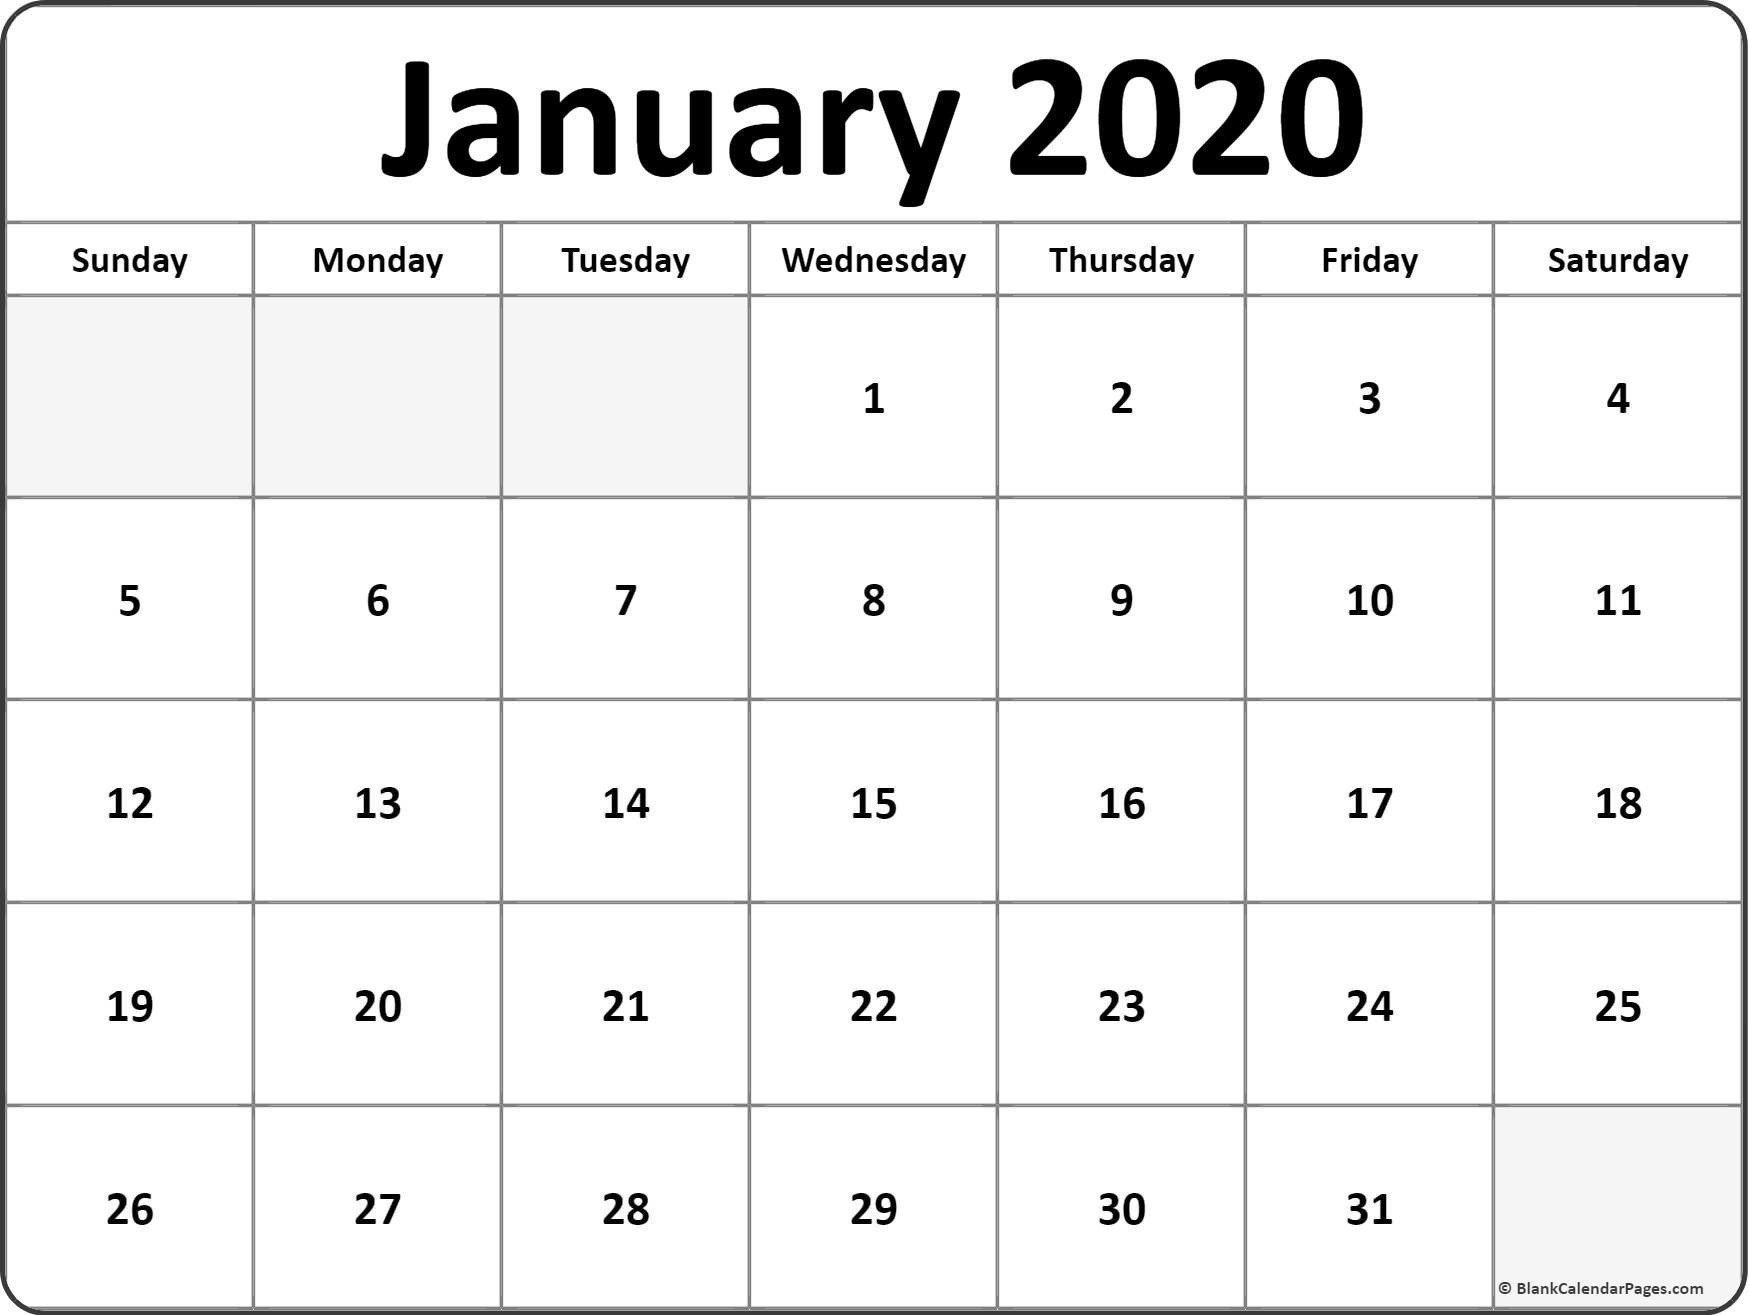 Calendar for January 2020 Printable January 2020 Blank Calendar Collection